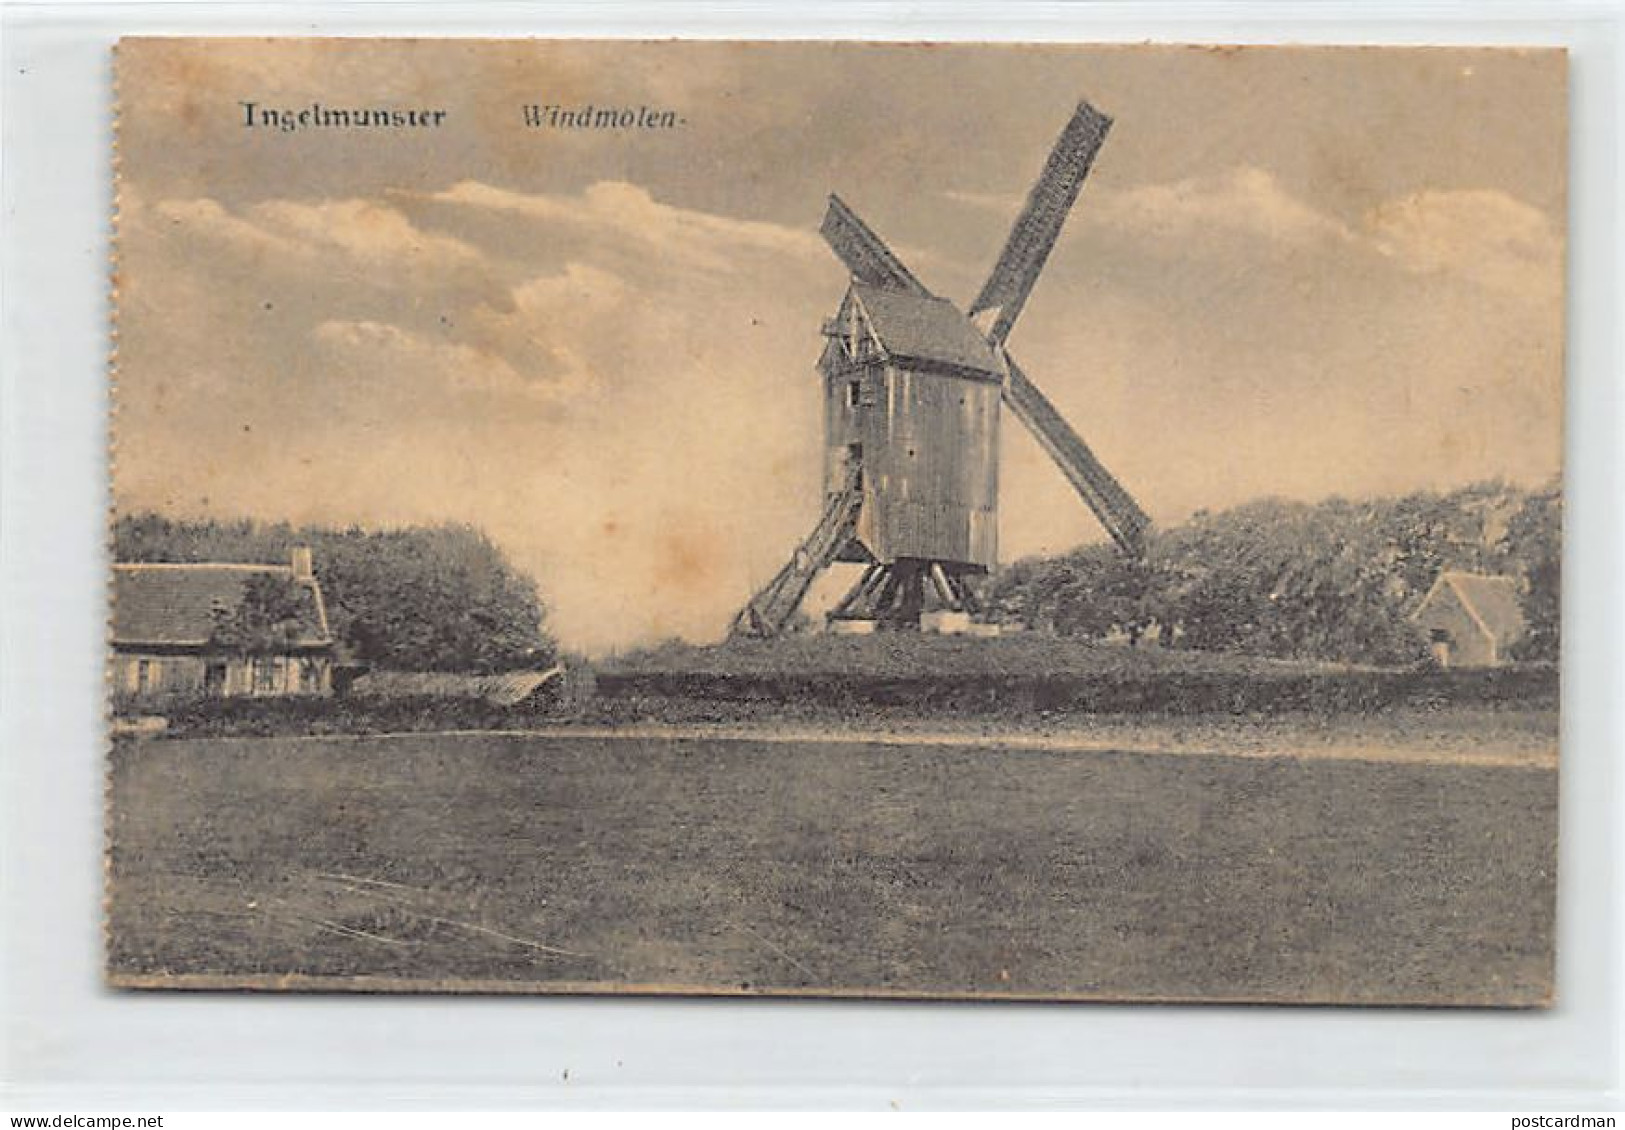 INGELMUNSTER (W. Vl.) Windmolen - Windmill - Ingelmunster